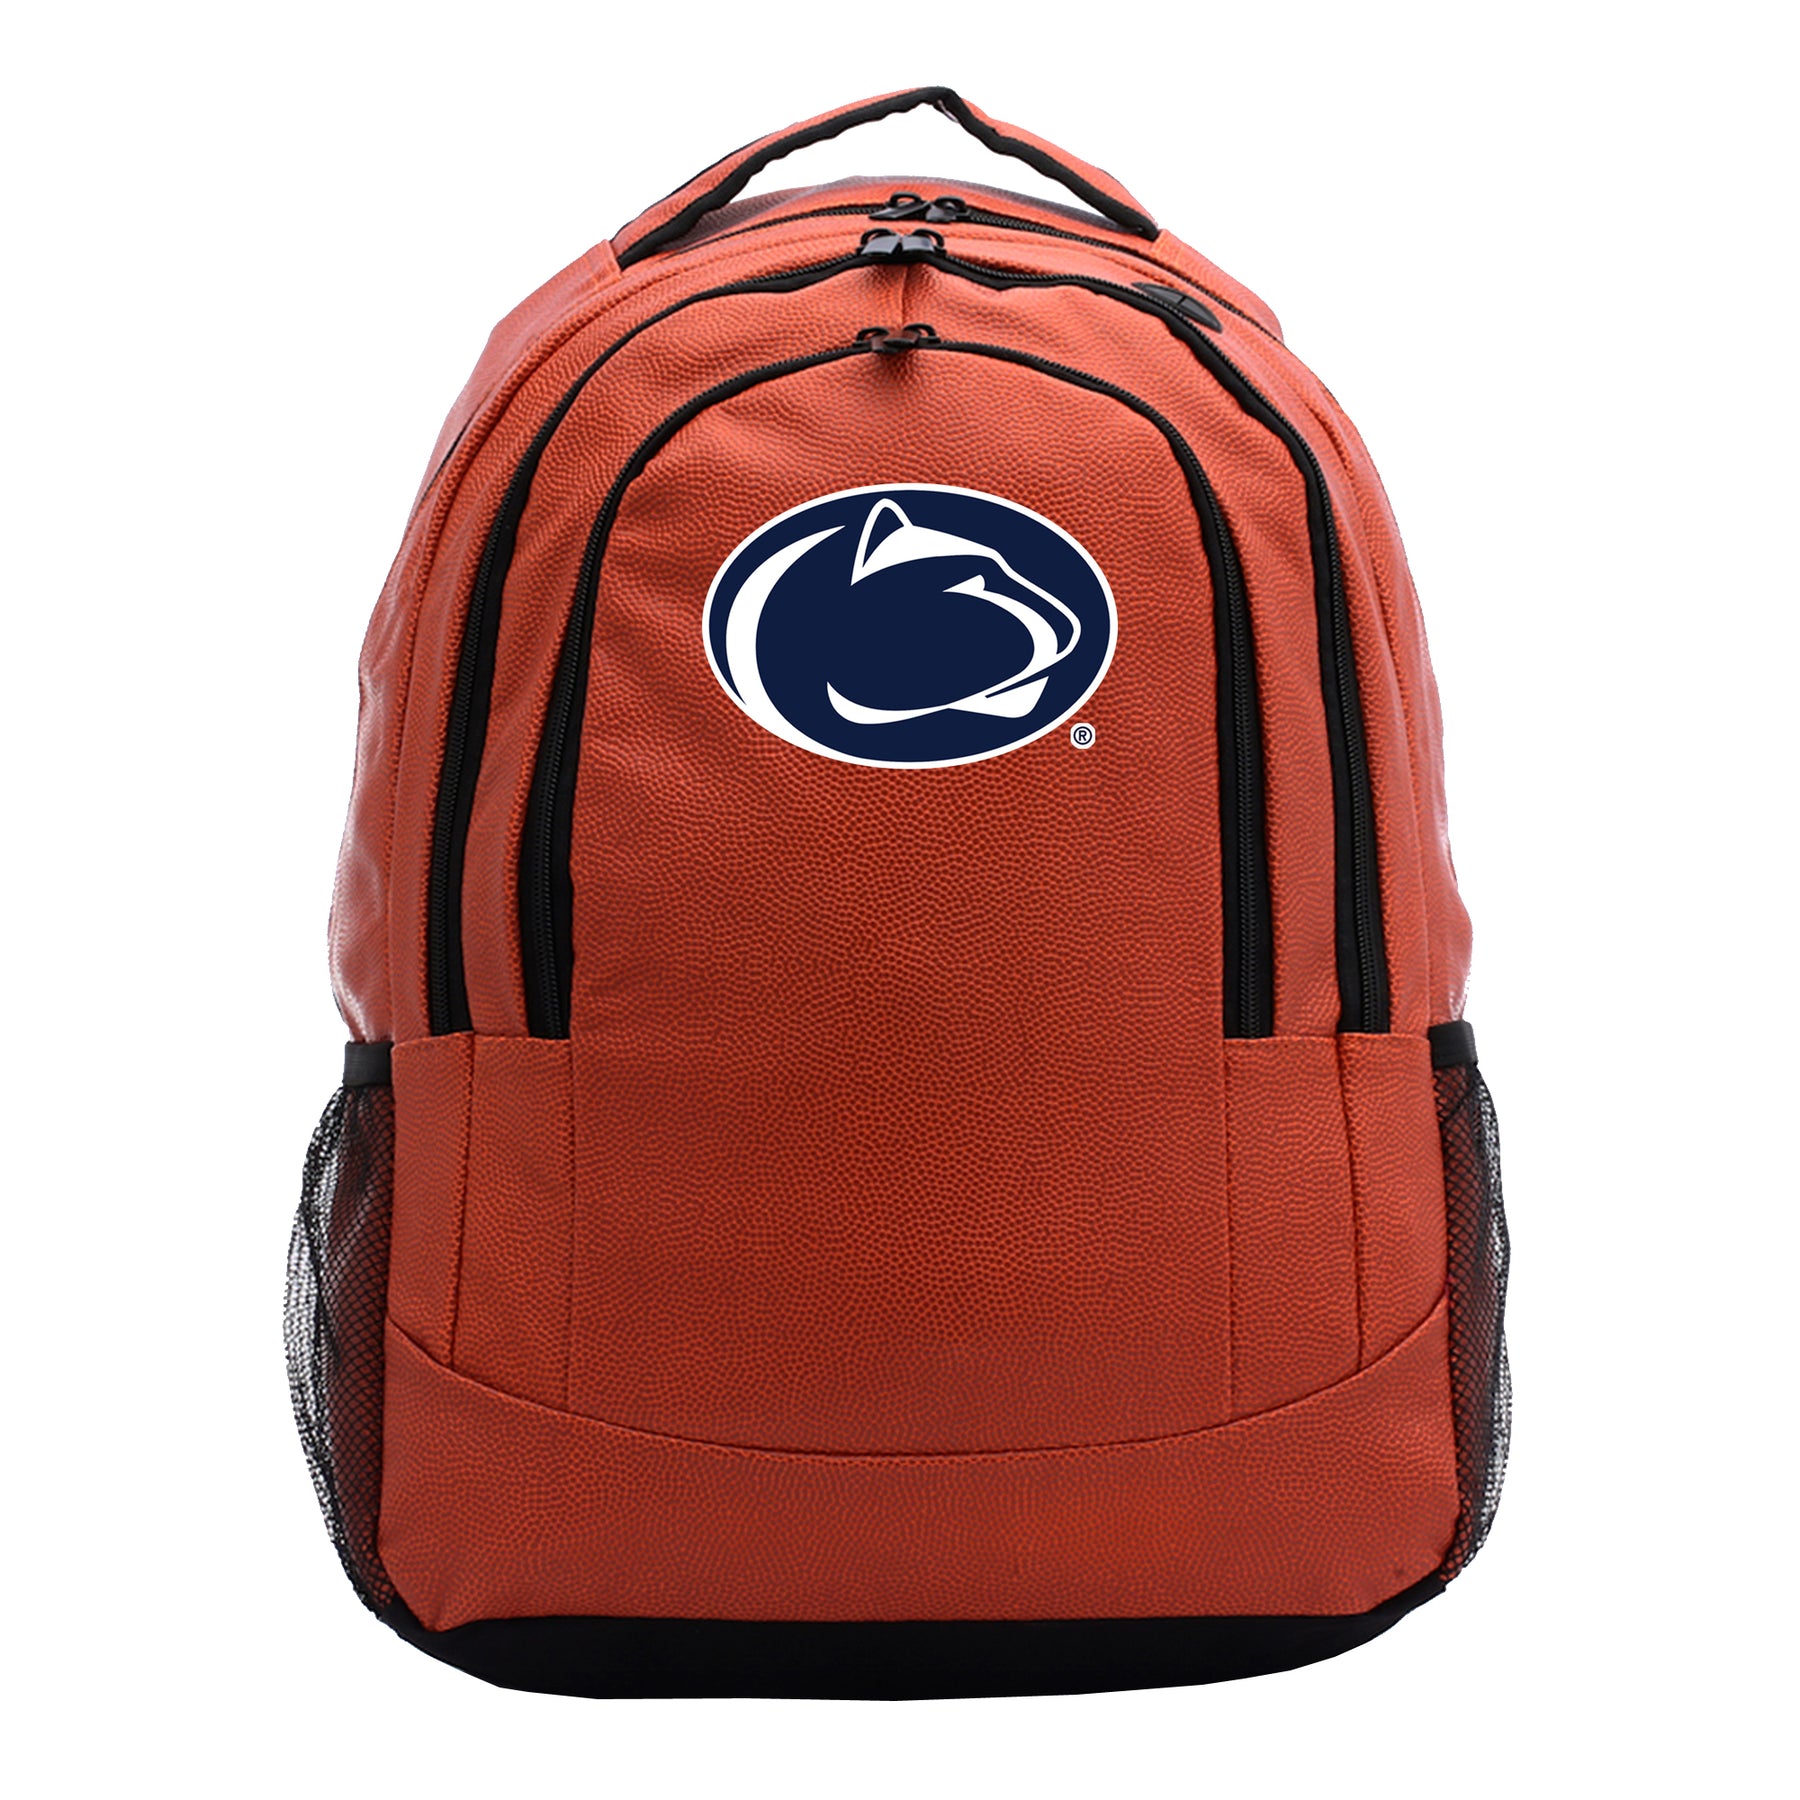 Penn State University Nittany Lions Basketball Backpack – Zumer Sport